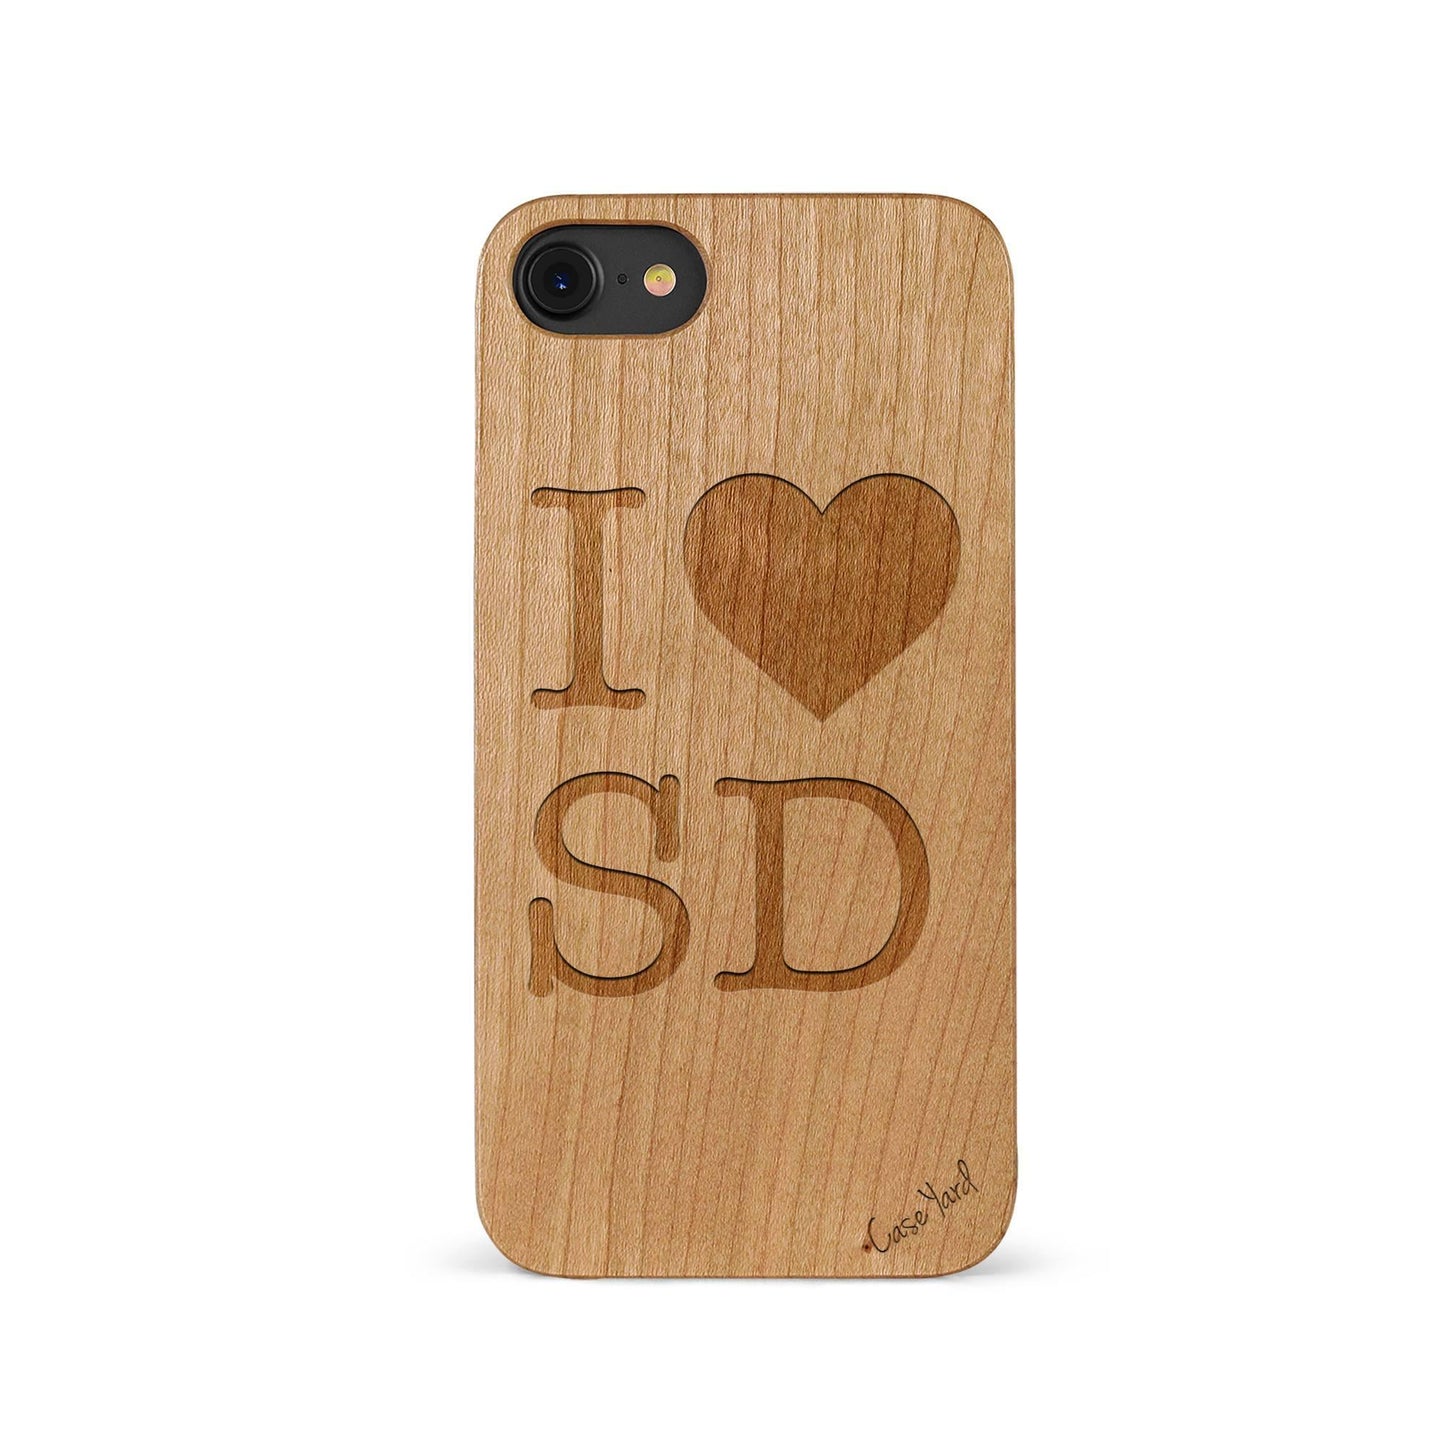 Love SD - Case Yard USA